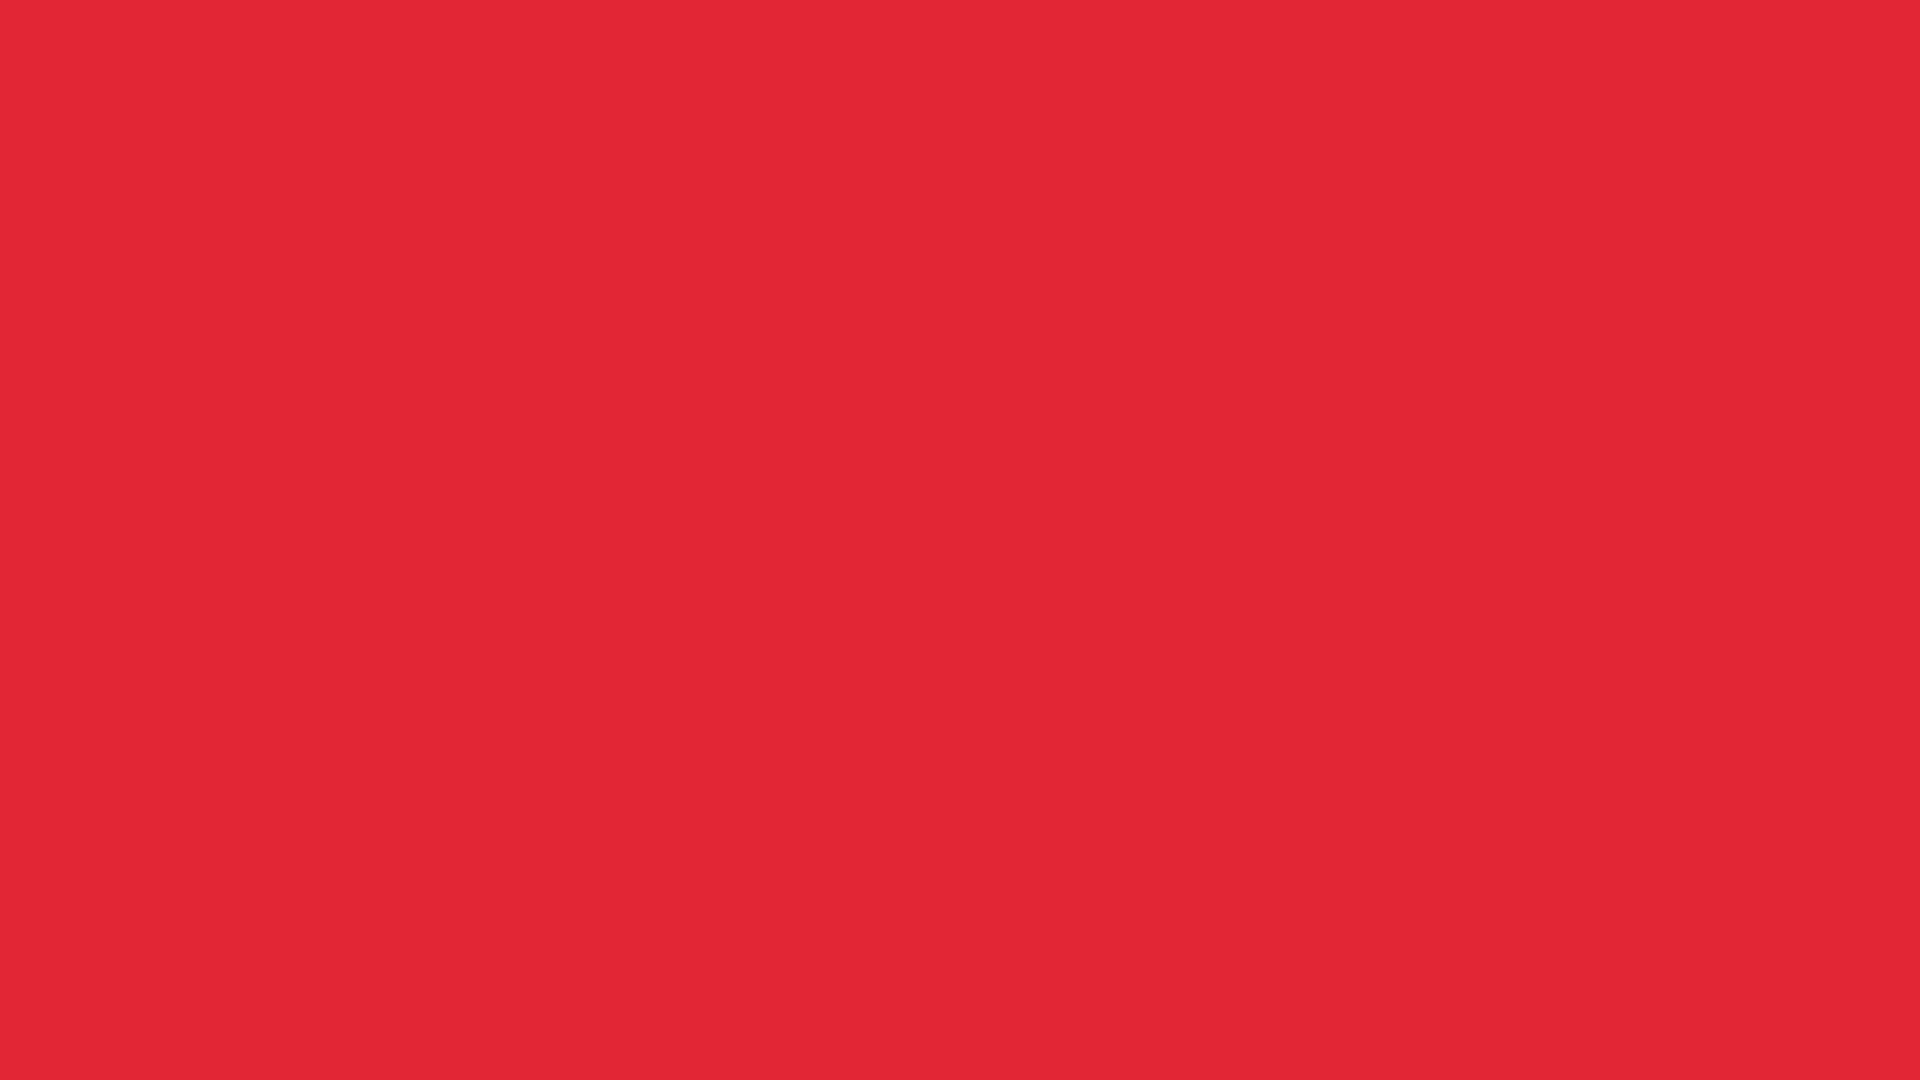 1920x1080 Alizarin Crimson Solid Color Background